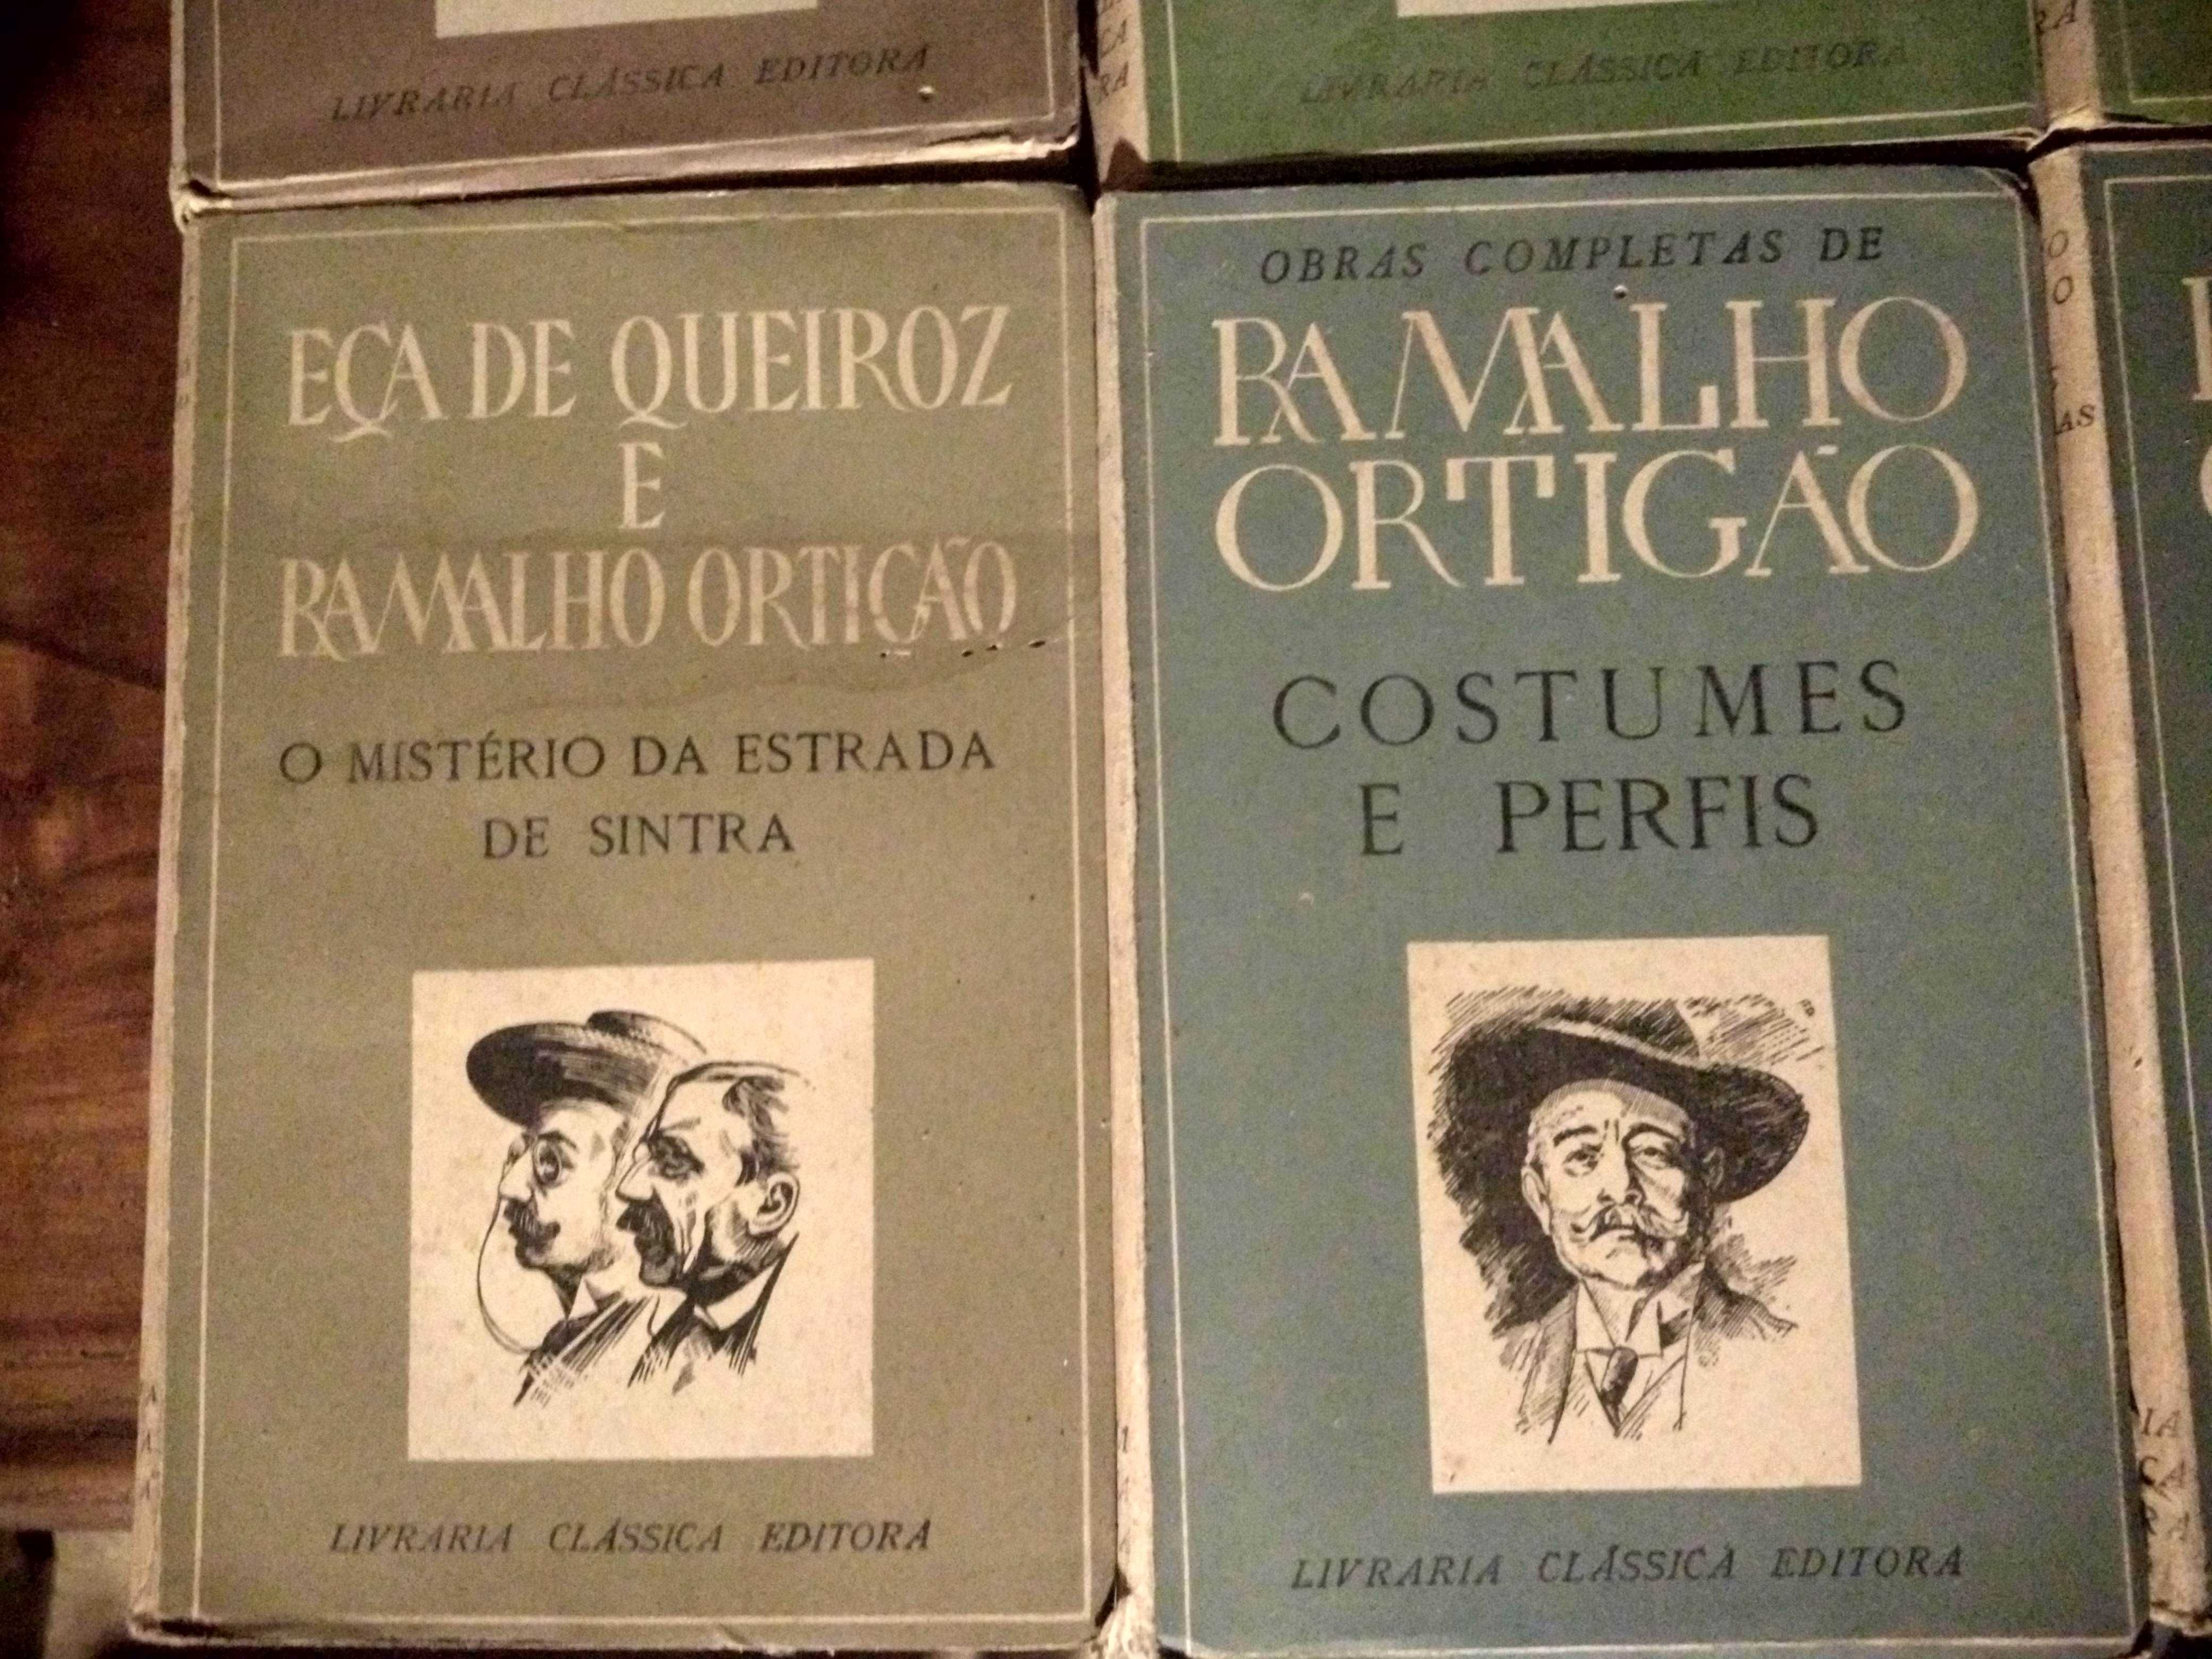 Colecção de obras de Ramalho Ortigão - Livraria Clássica Editora